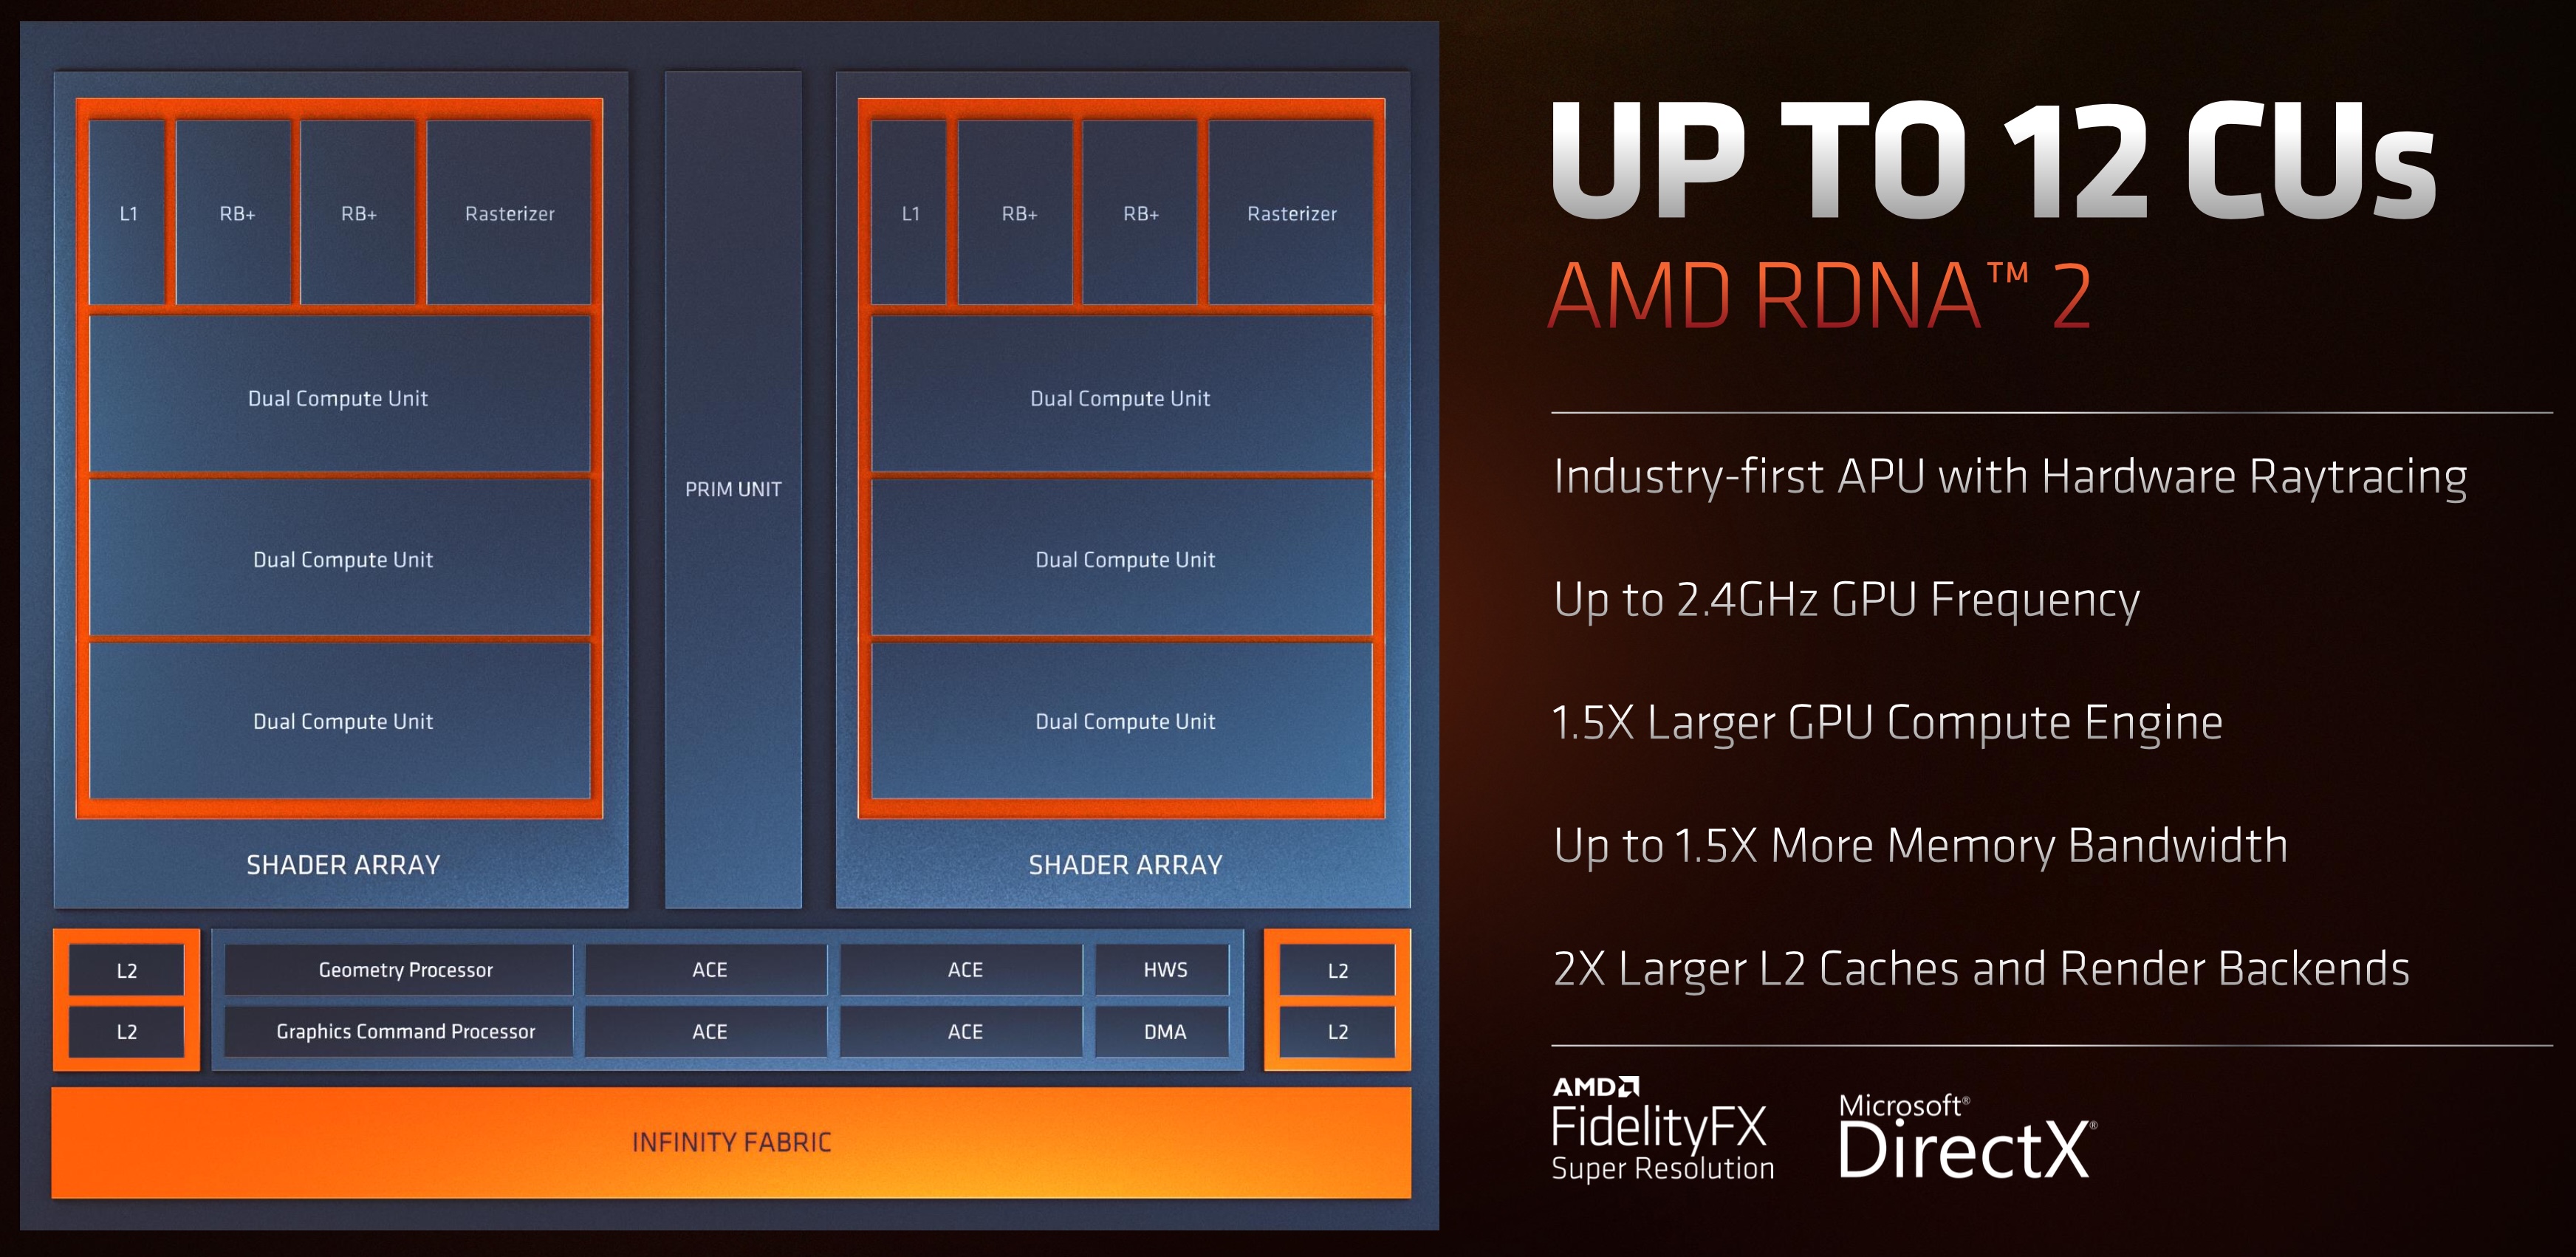 Vejrtrækning Åbent Herske AMD Radeon 680M GPU - Benchmarks and Specs - NotebookCheck.net Tech